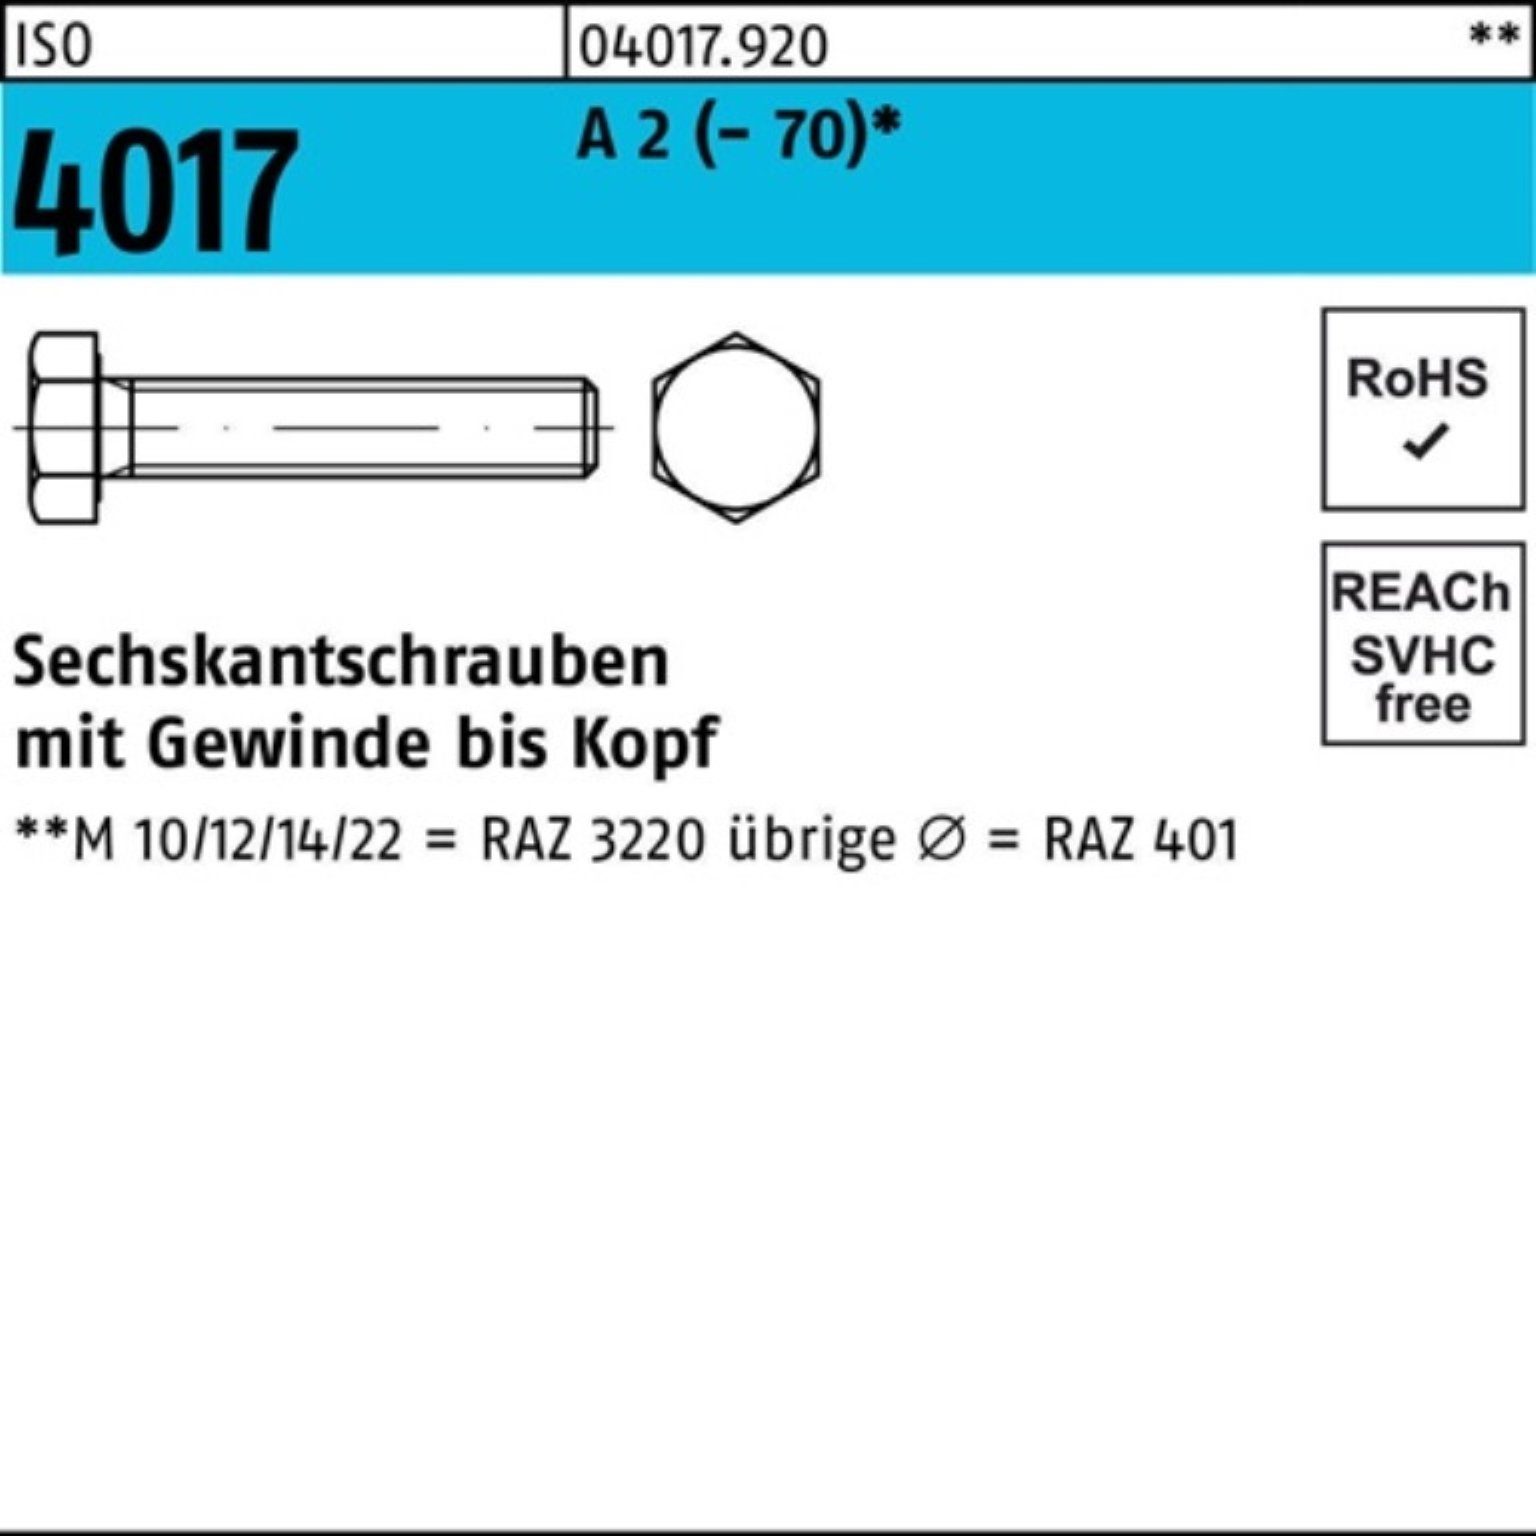 Bufab Sechskantschraube 200er Pack Sechskantschraube ISO 4017 VG M6x 30 A 2 (70) 200 Stück